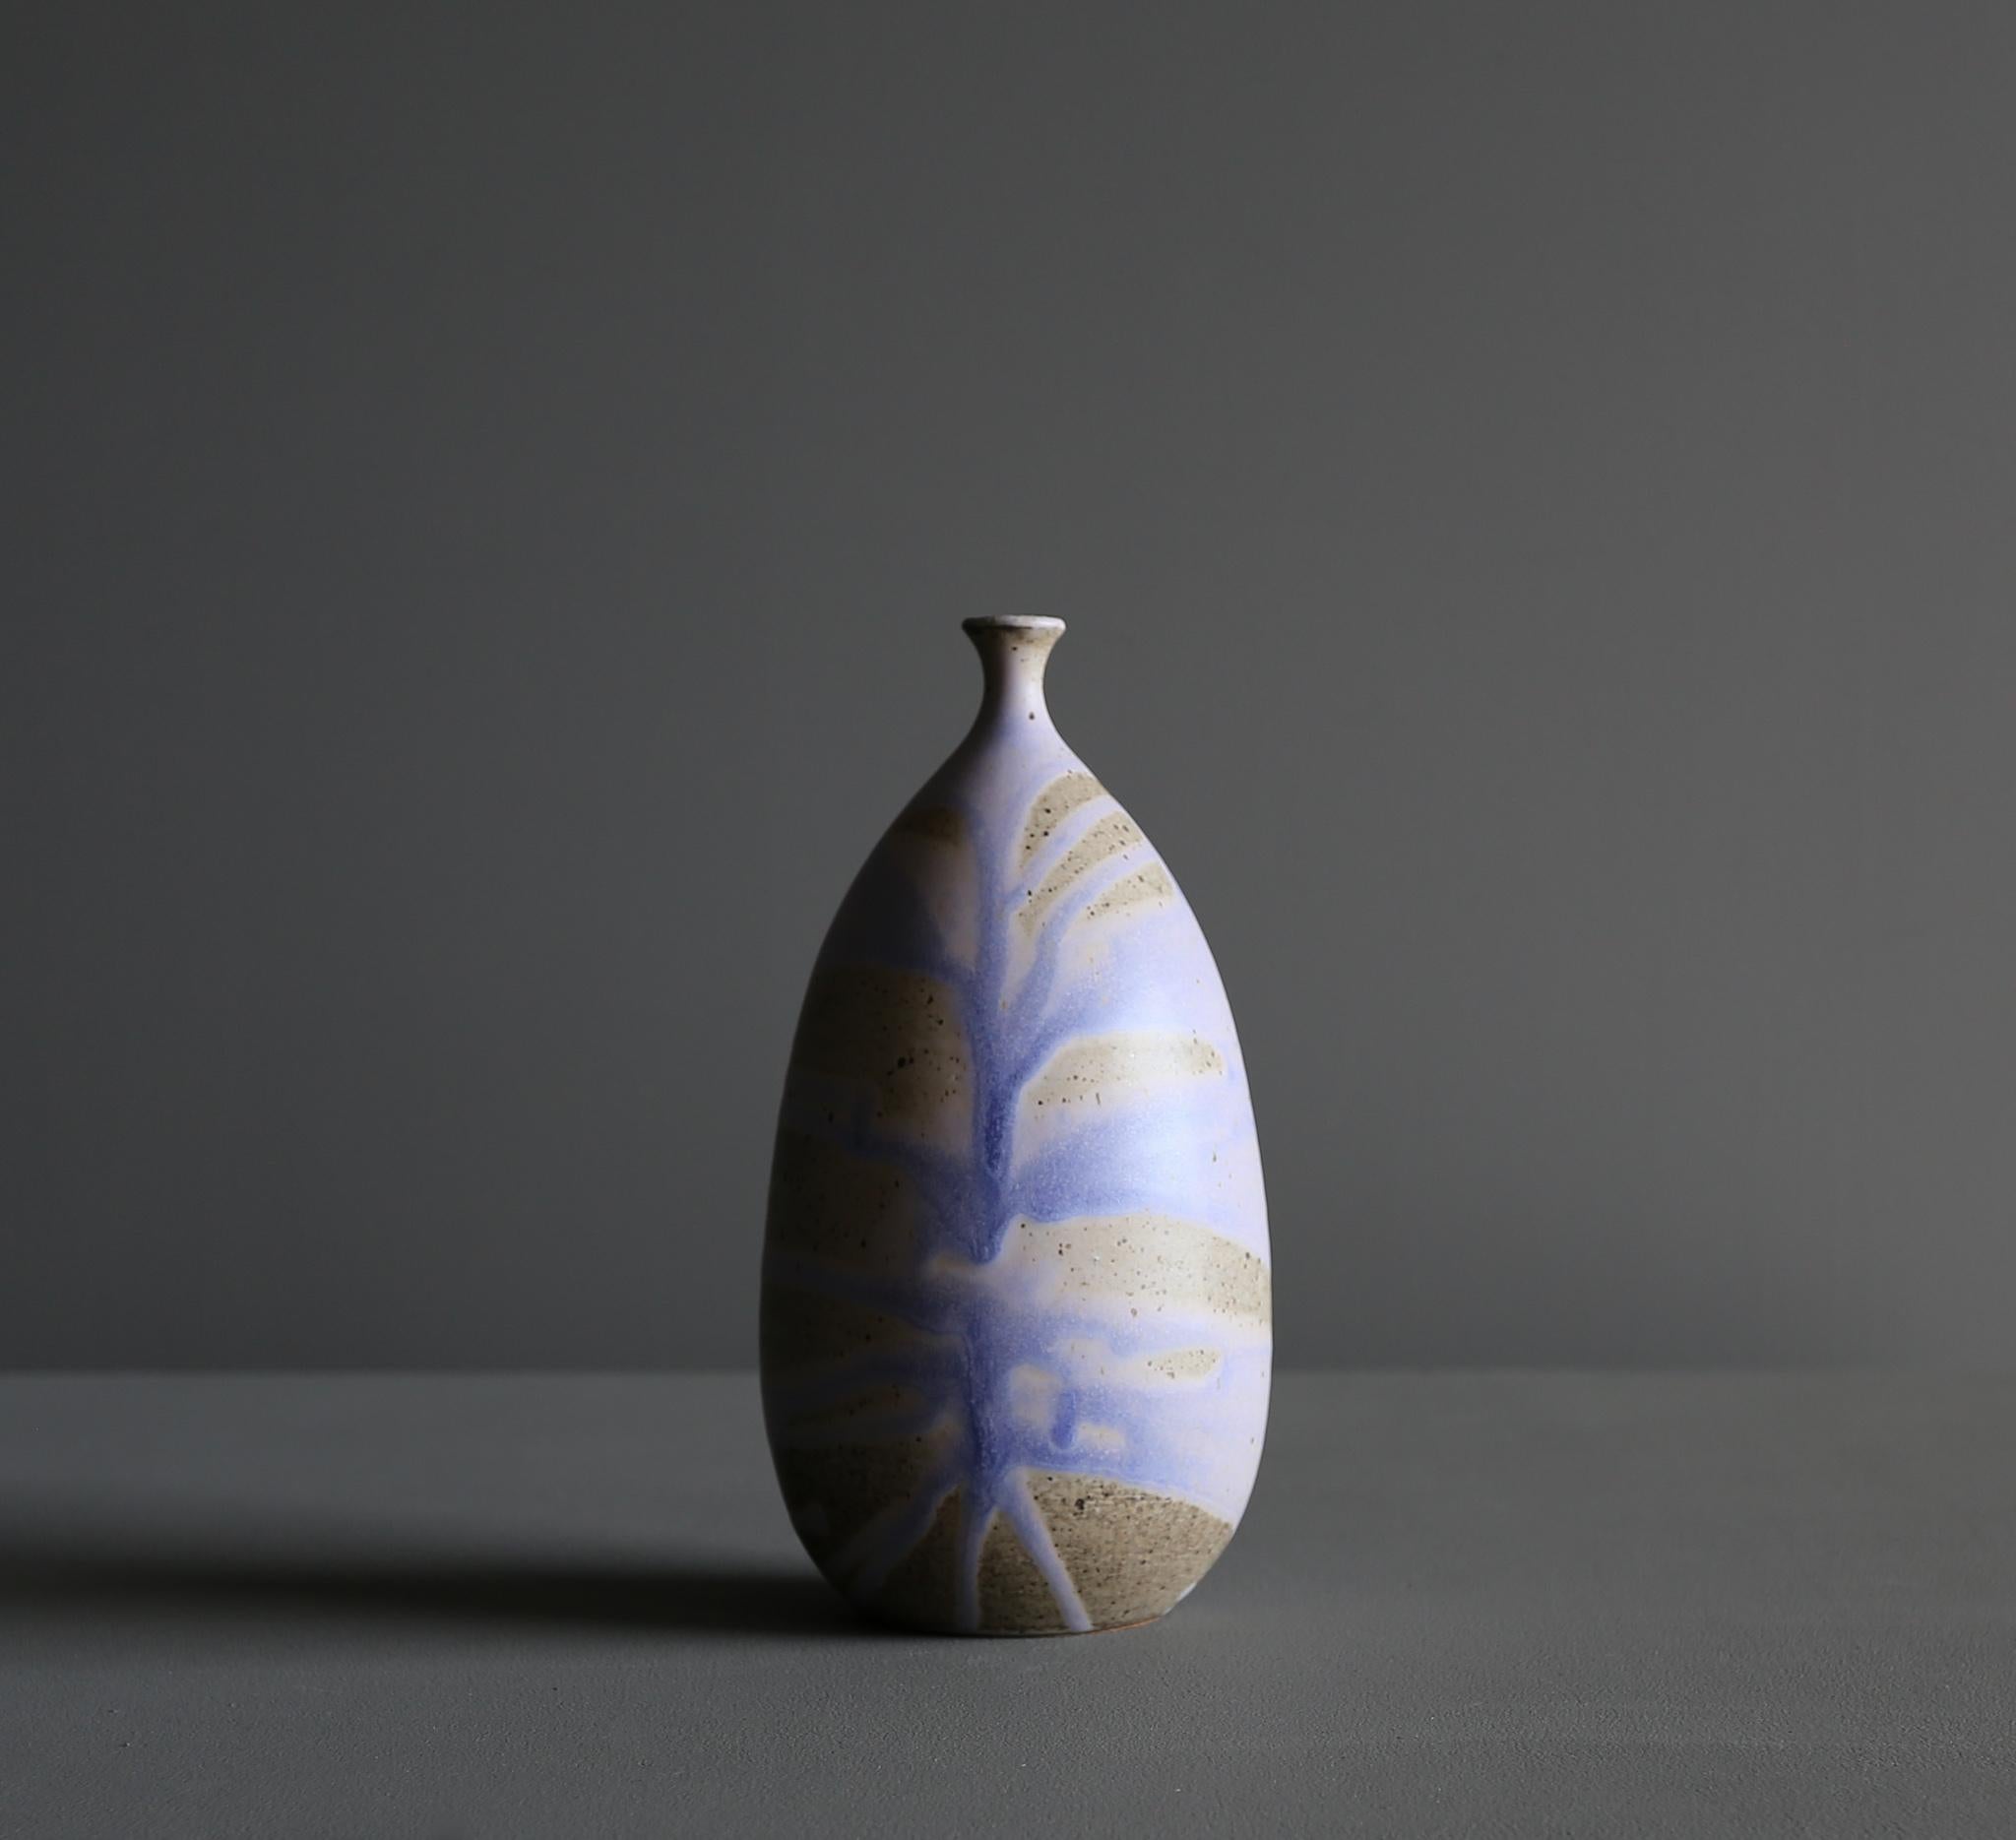 Tim Keenan Ceramic vase.